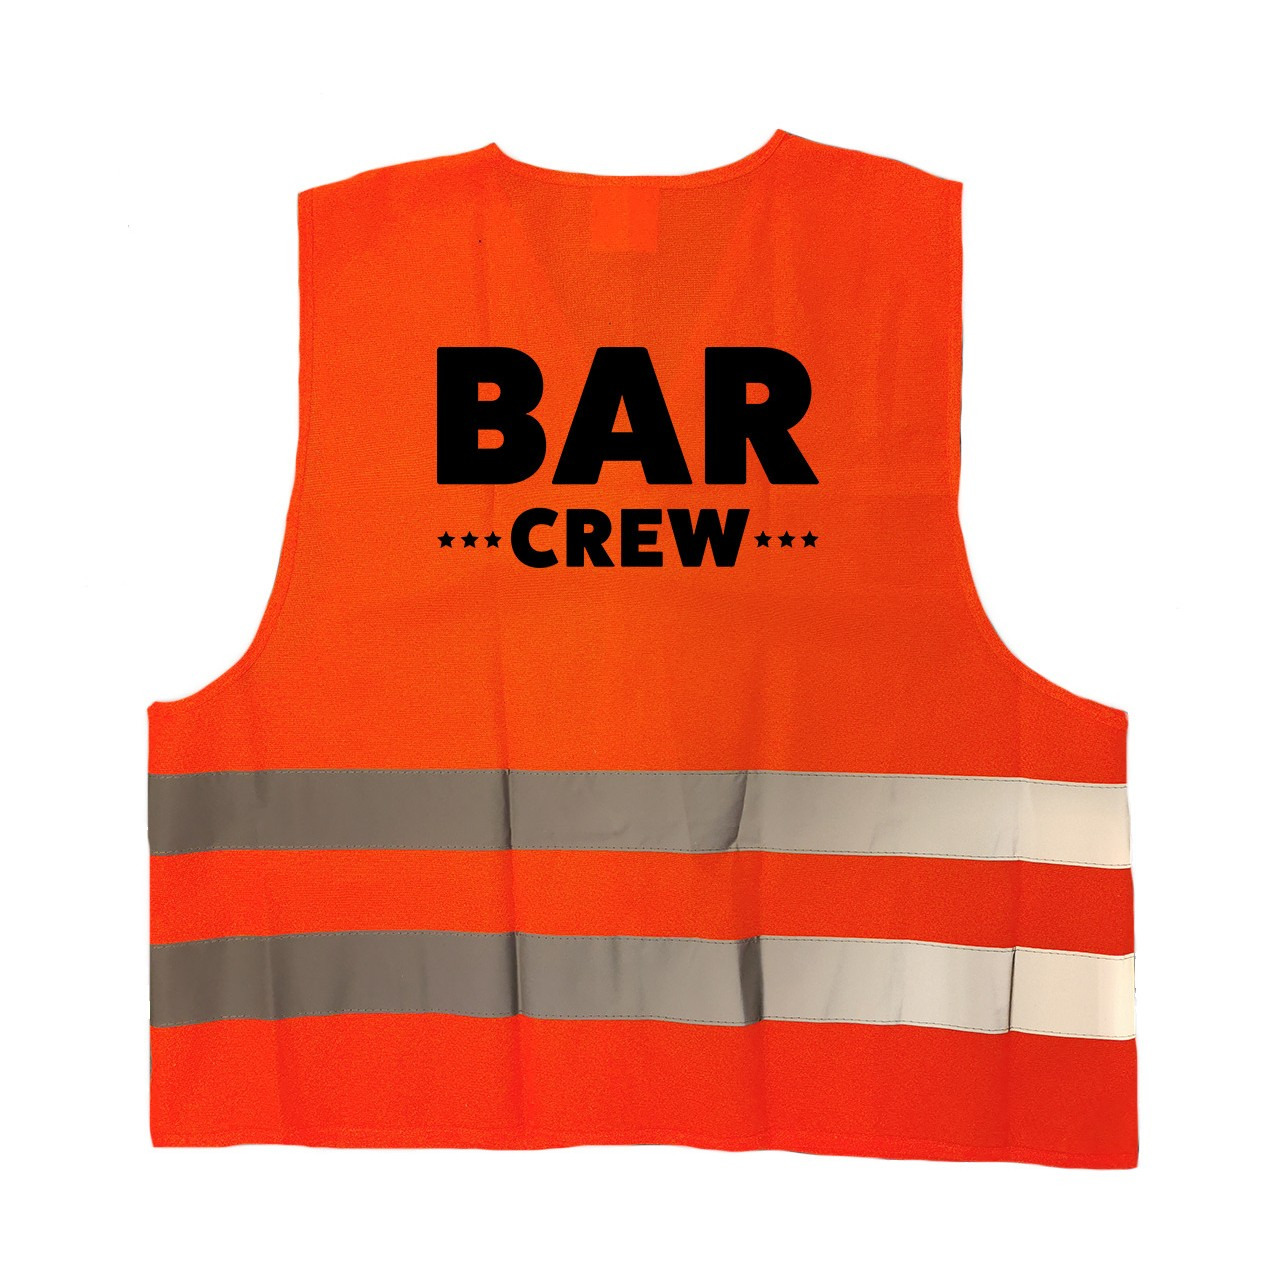 Bar crew-personeel vestje-hesje oranje met reflecterende strepen voor volwassenen